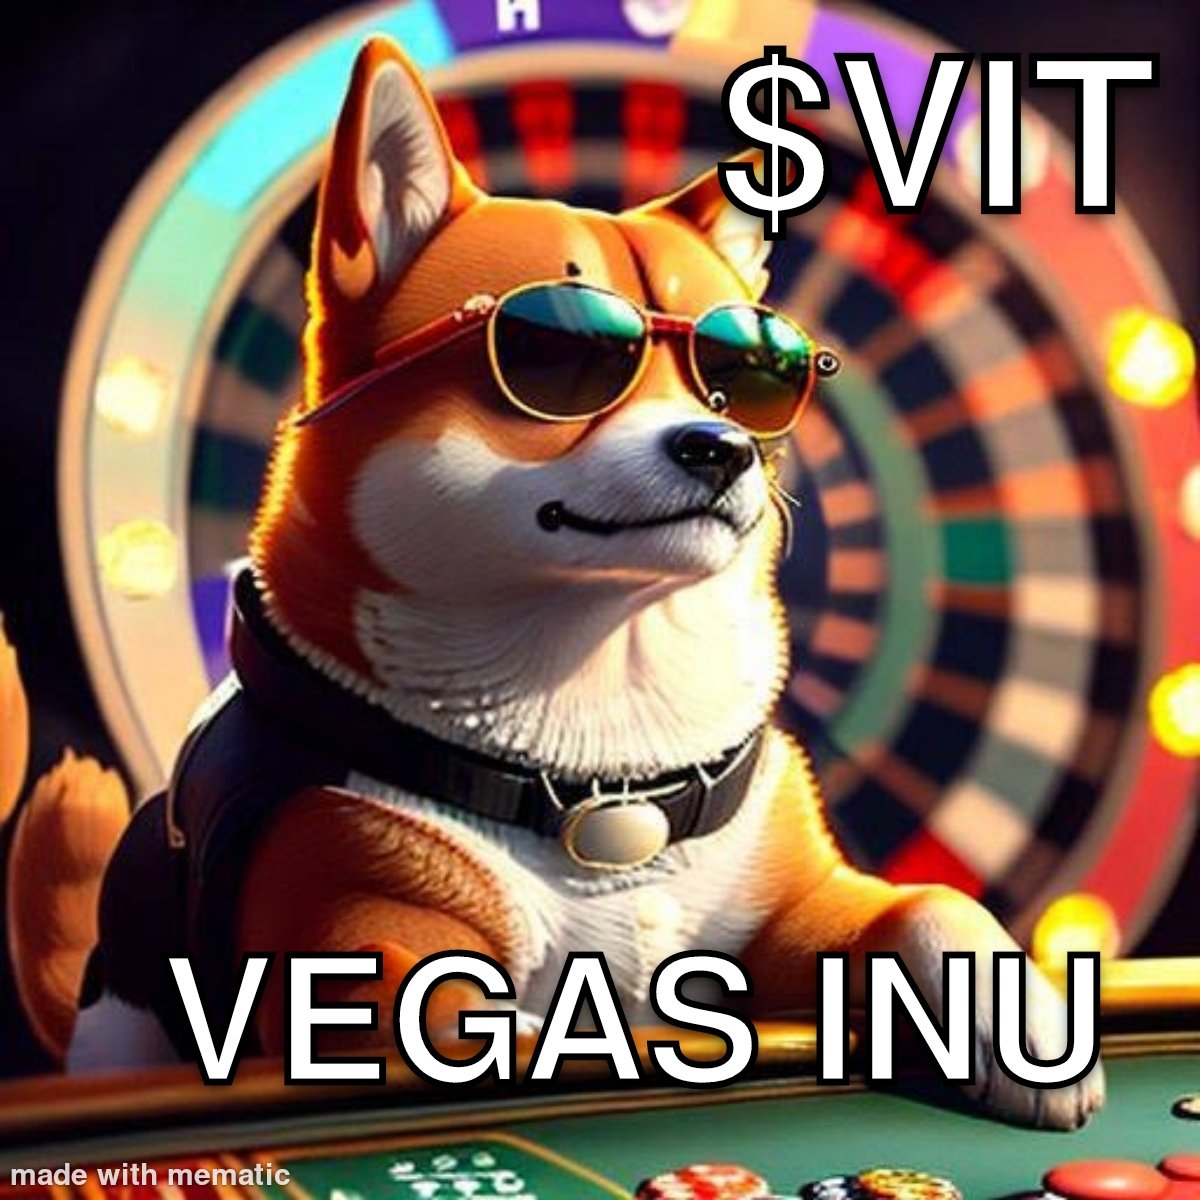 @ElliotsGems @VegasInuToken Lets Goooooo!! #HighRollers 
ATH after ATH...#VegasInu $VIT #VegasInuToken #Vegas
@VegasInuToken